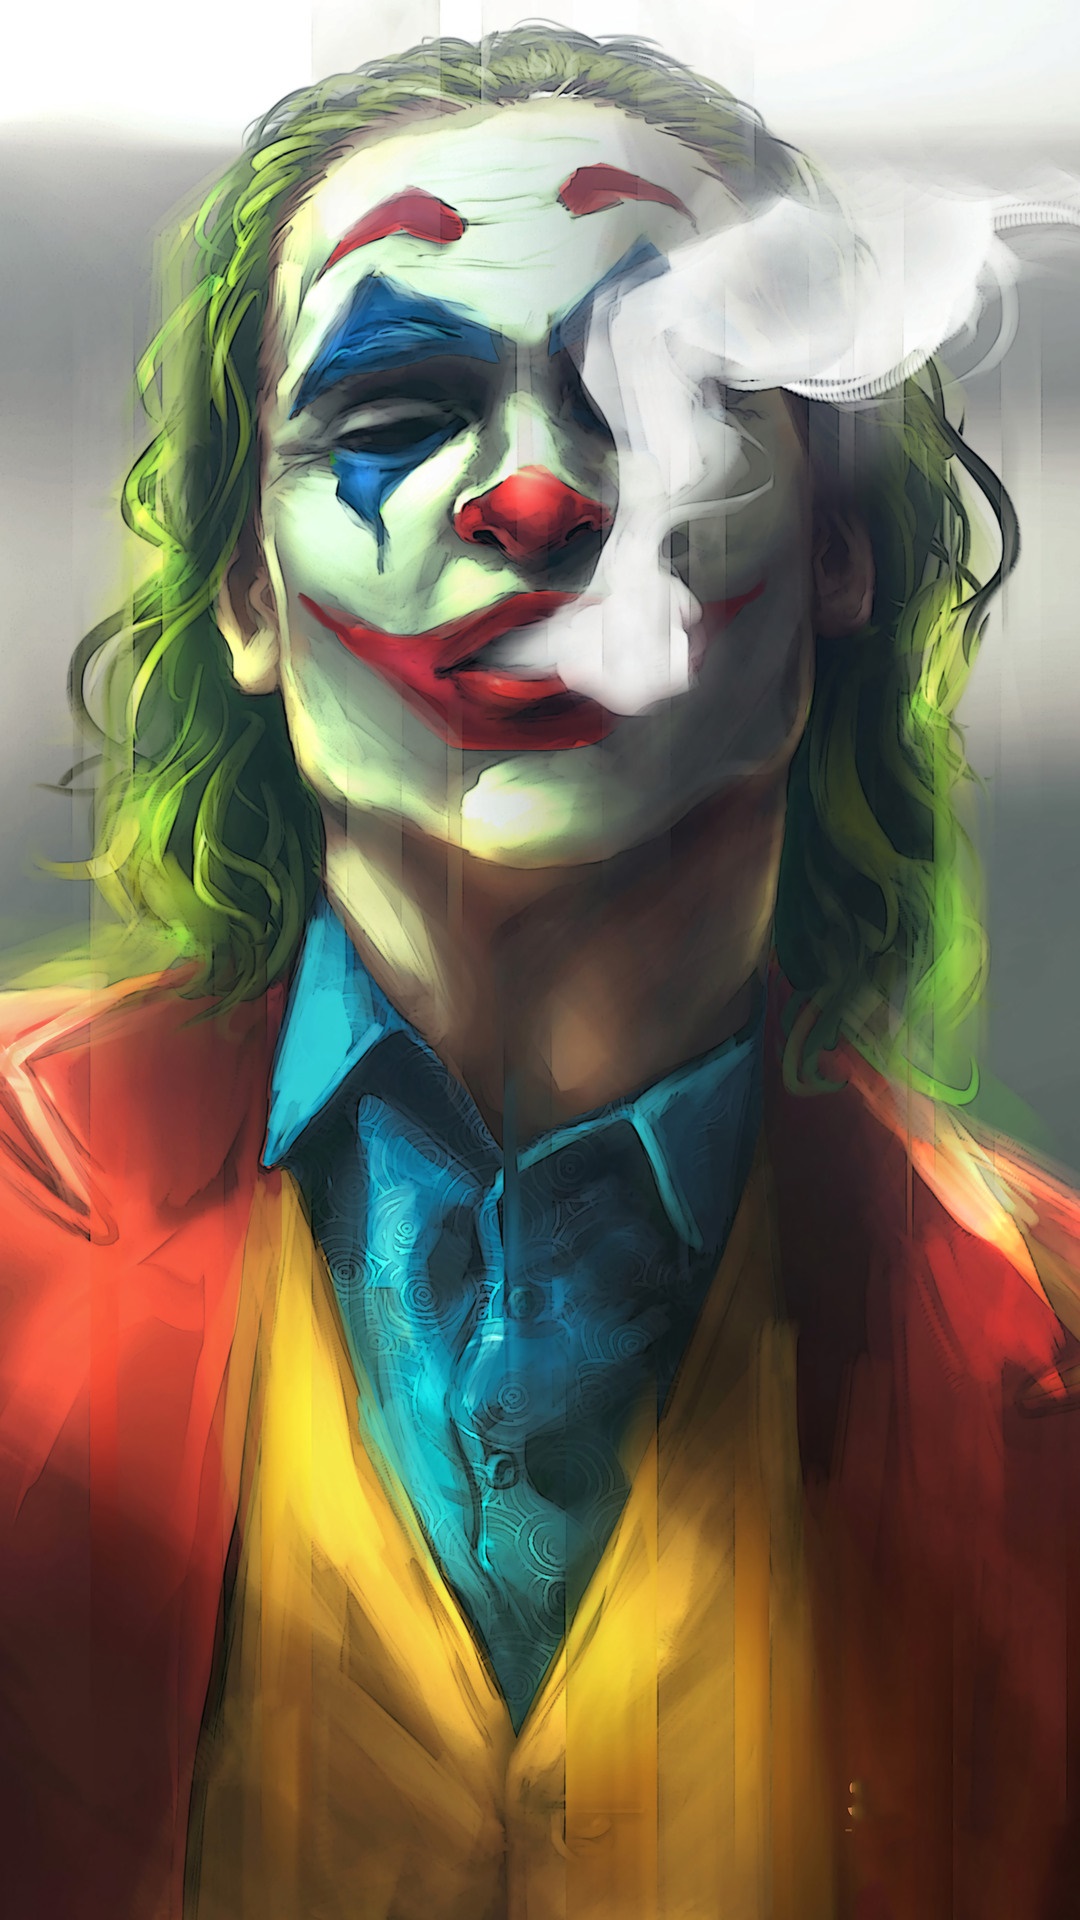 Joker movie